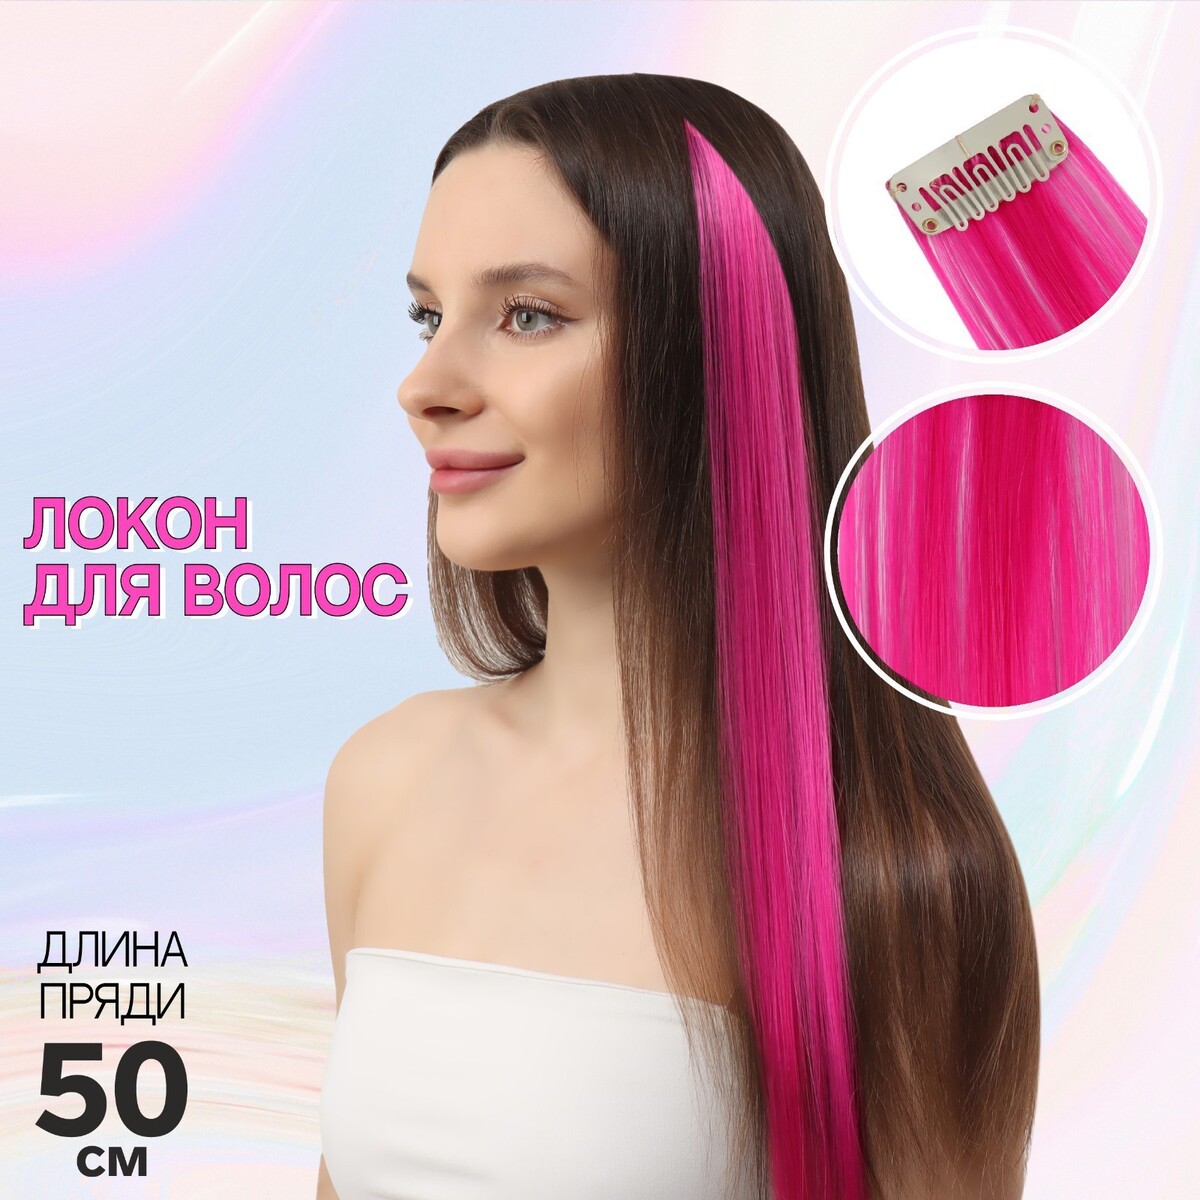 Локон накладной, прямой волос, на заколке, 50 см, 5 гр, цвет розовый локон накладной единорог прямой волос на заколке 40 см микс